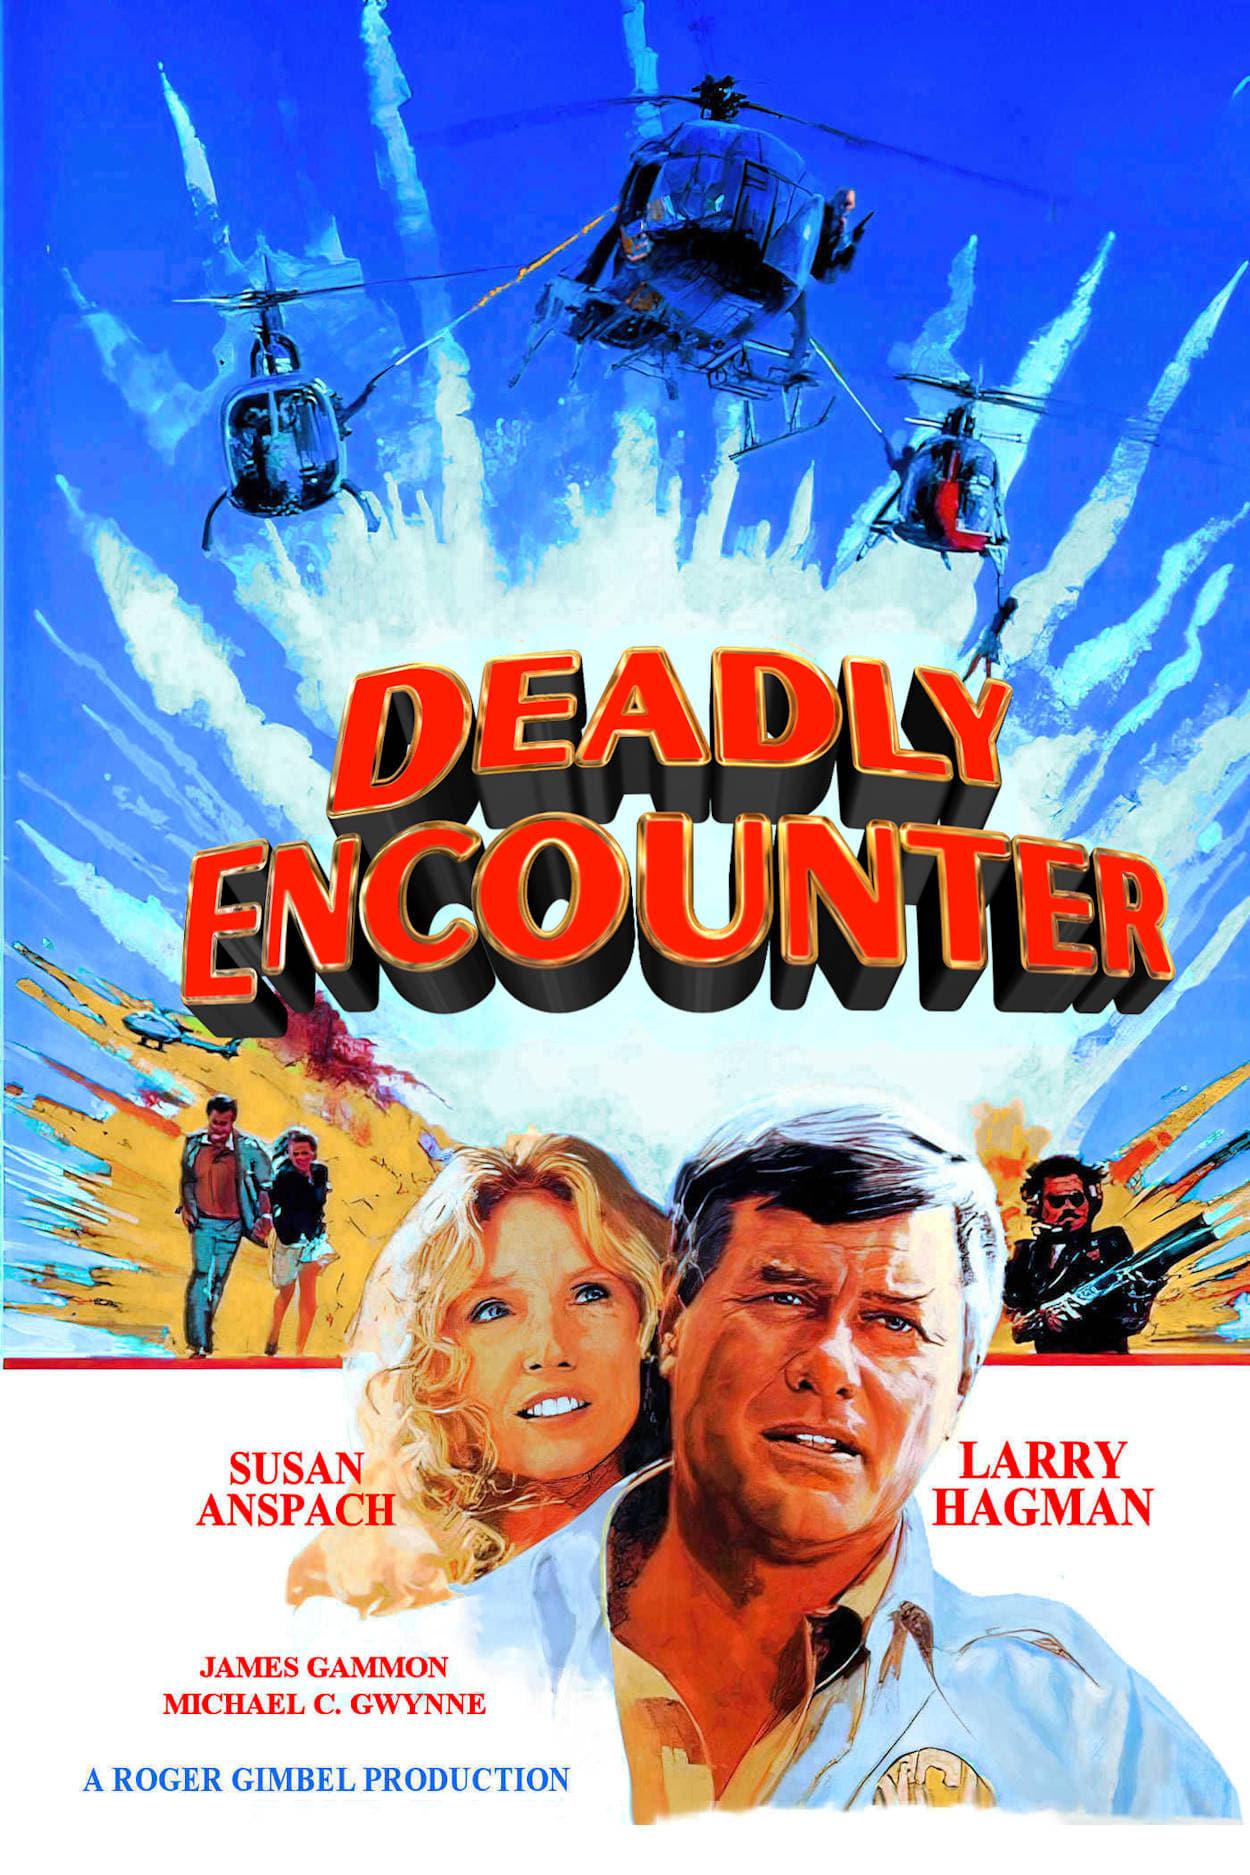 Deadly Encounter poster